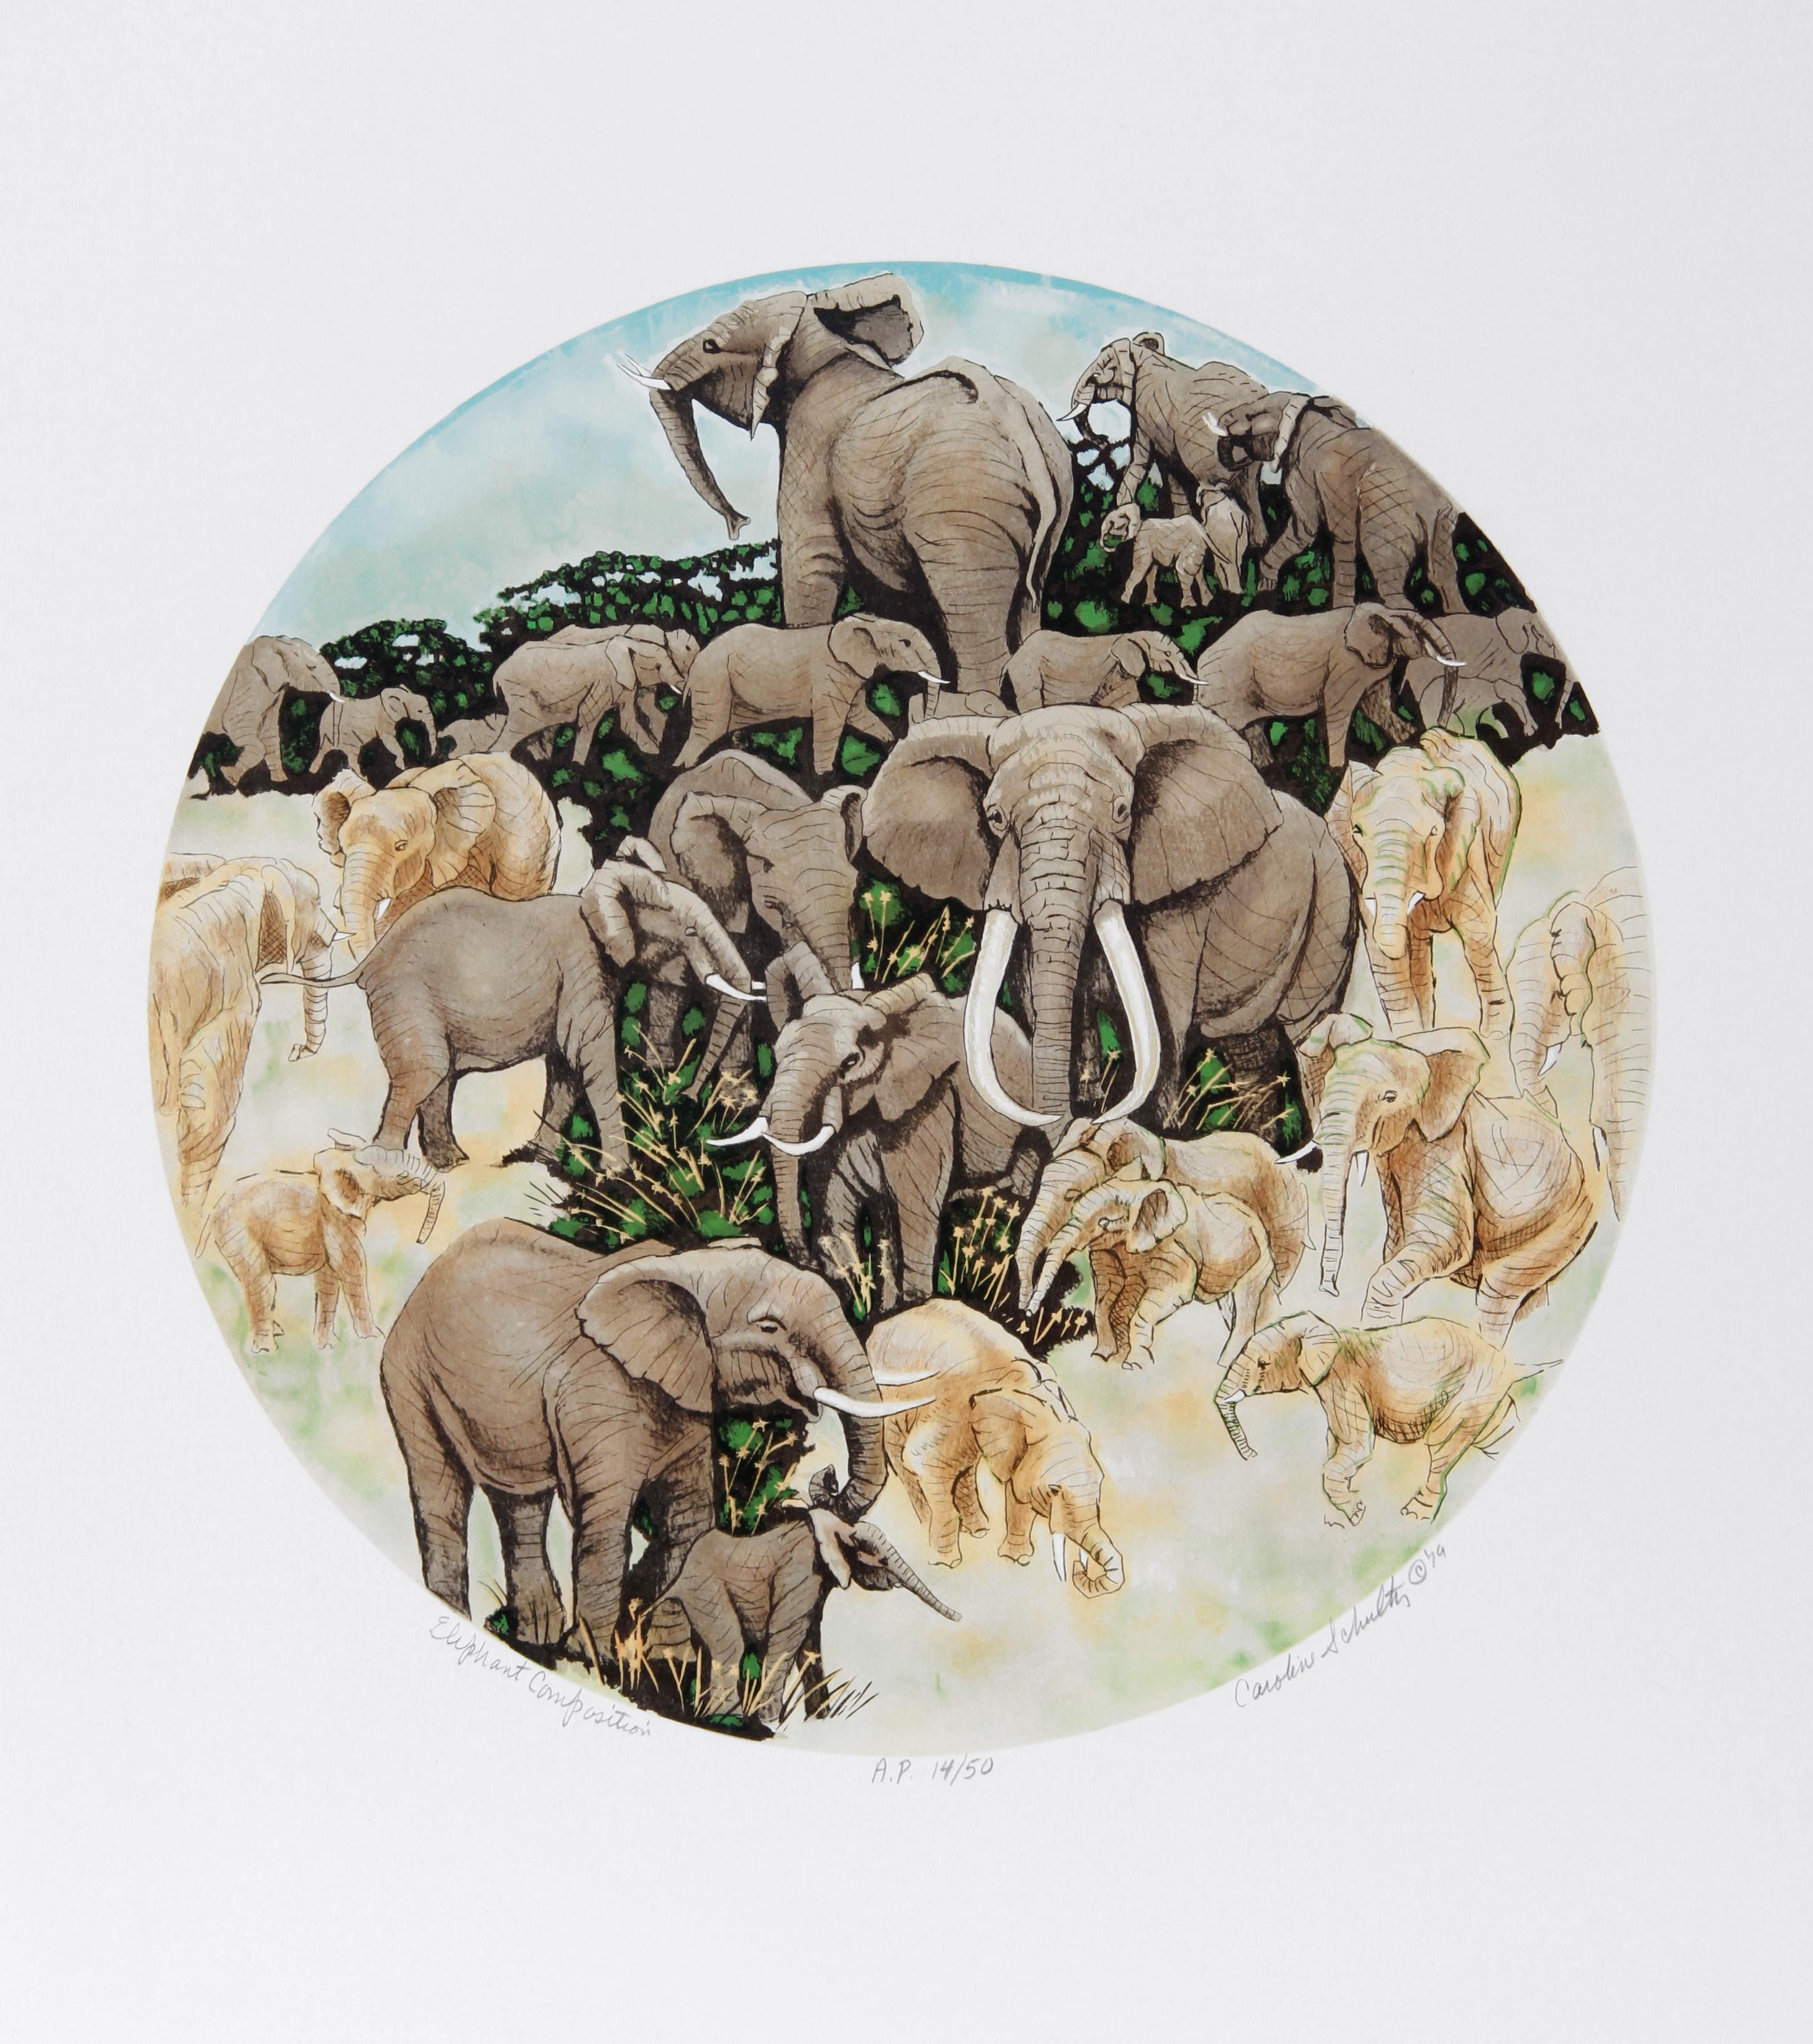 Composition de l'éléphant
Caroline Schultz, américaine (1936-2004)
Date : 1980
Lithographie, signée et numérotée au crayon
Edition de 300
Taille de l'image : 19 x 19 pouces
Taille : 73,66 cm x 58,42 cm (29 in. x 23 in.)